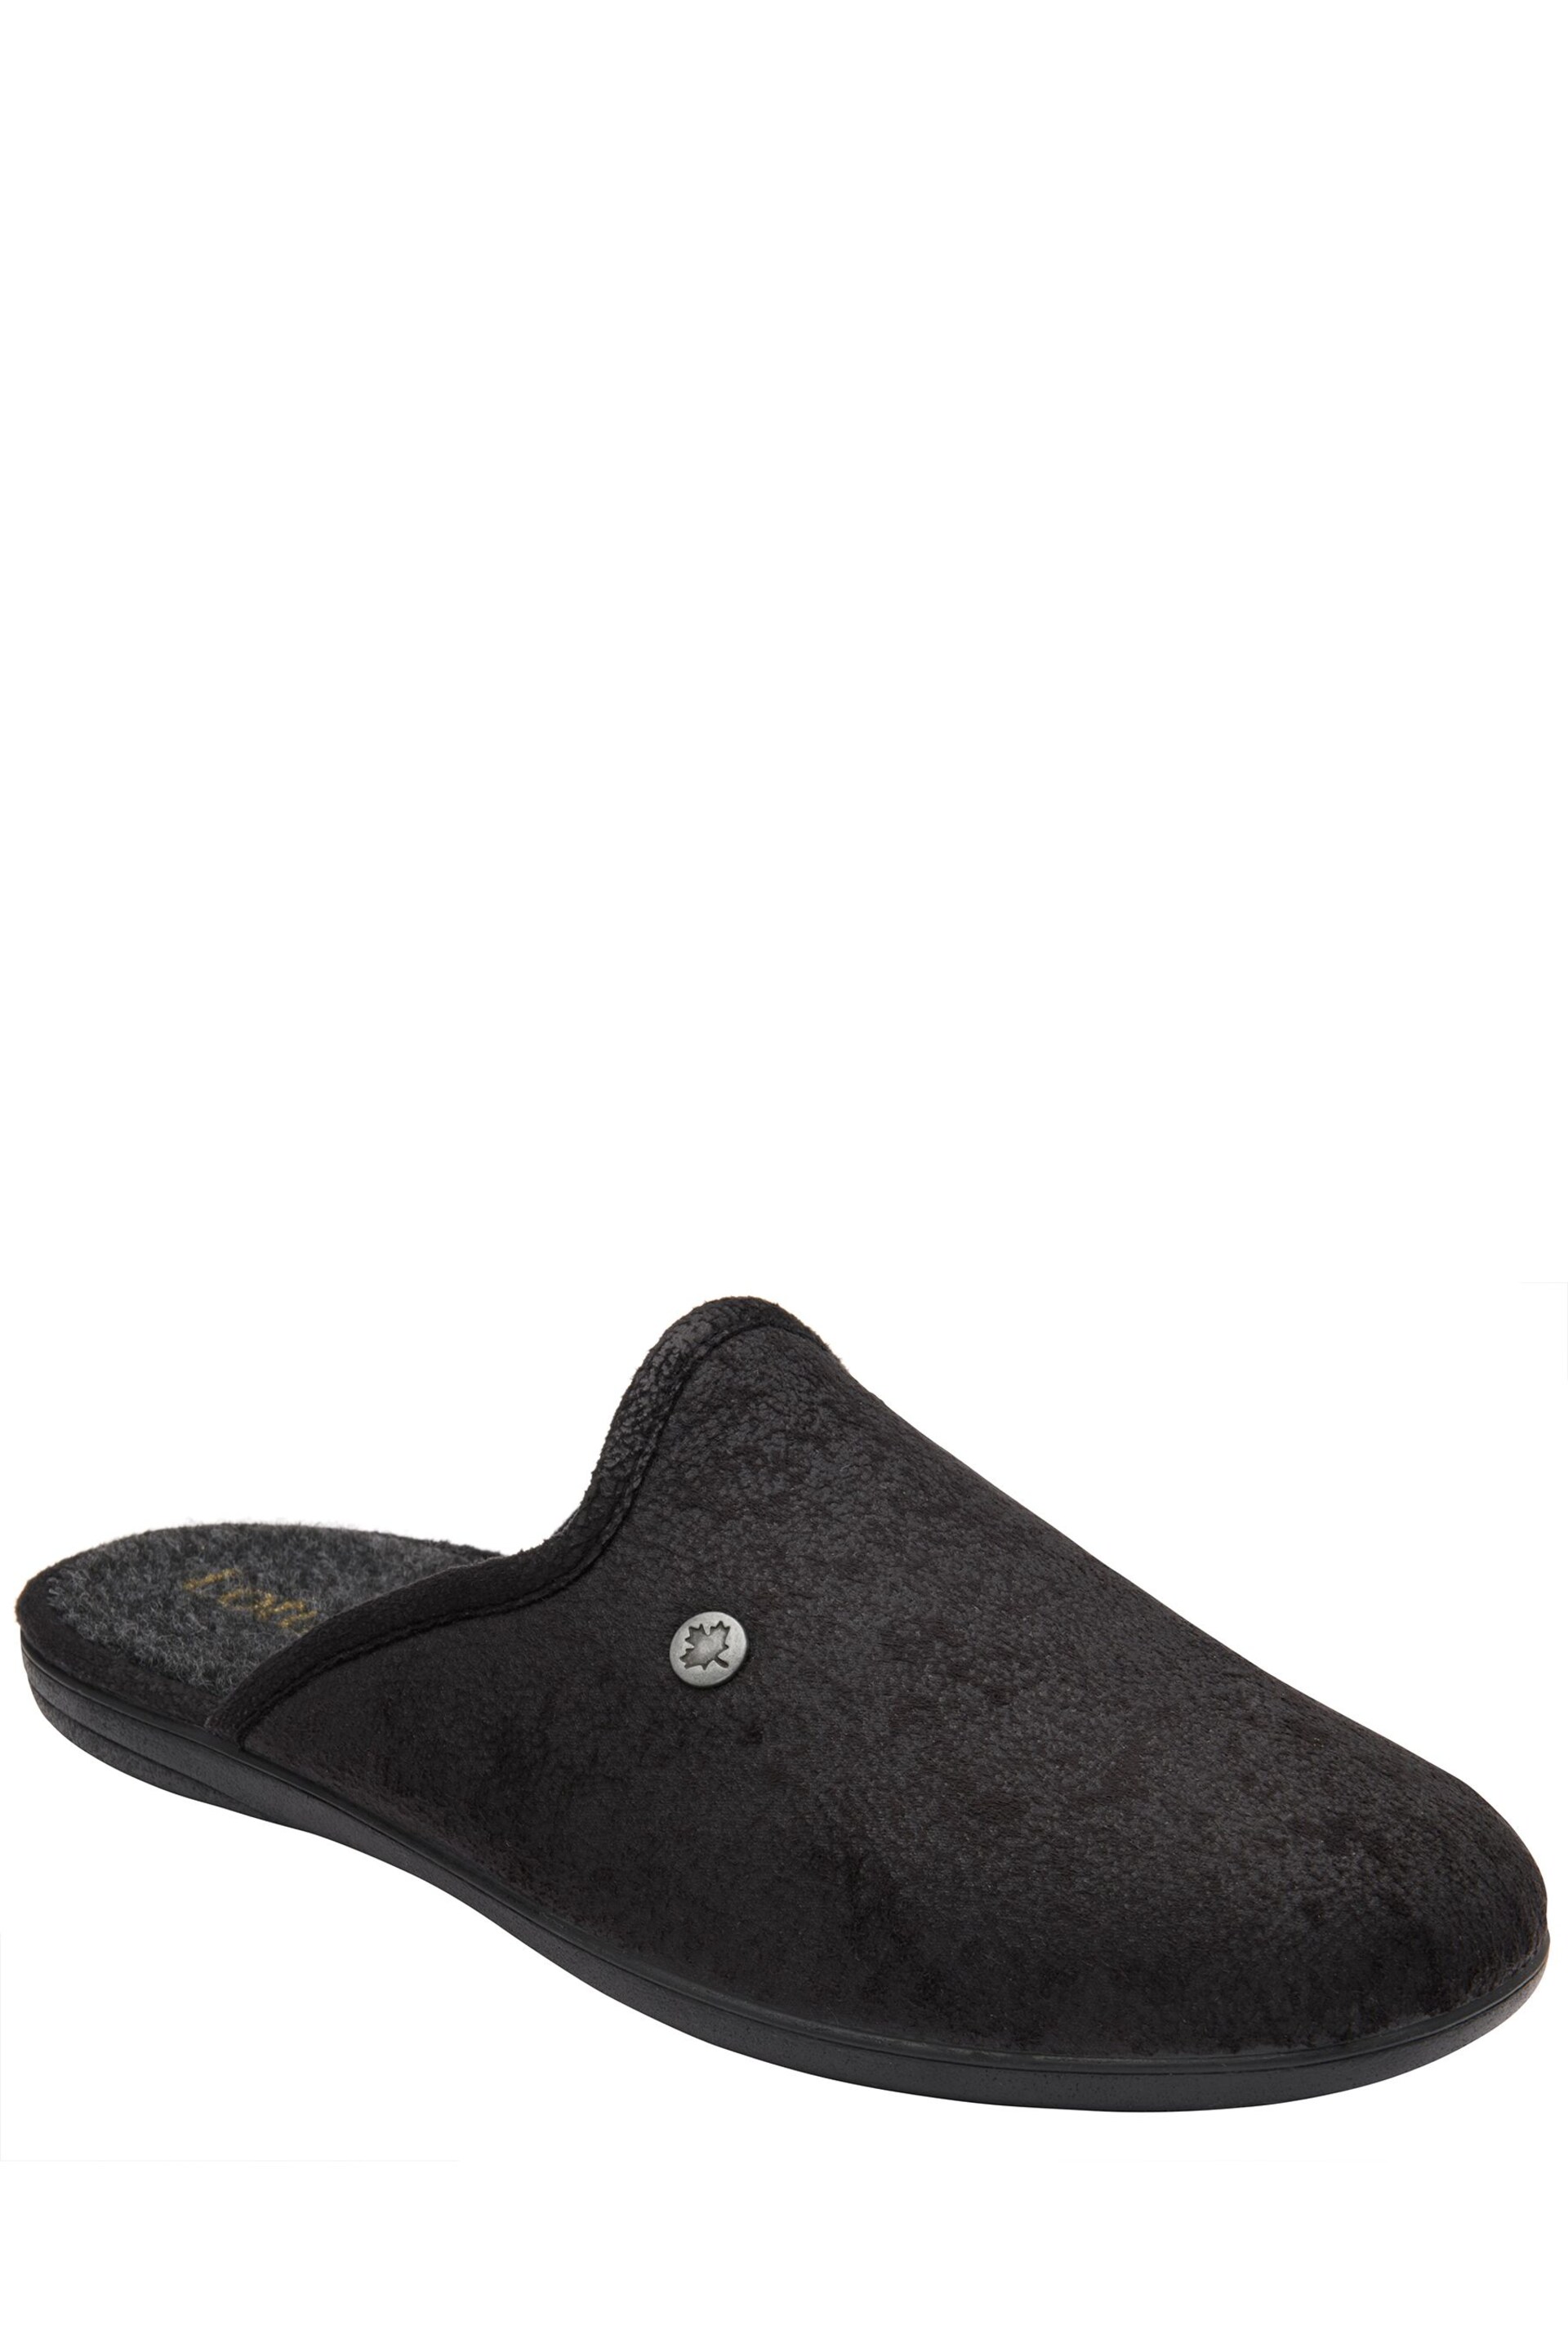 Lotus Black Flat Mule Slippers - Image 1 of 4